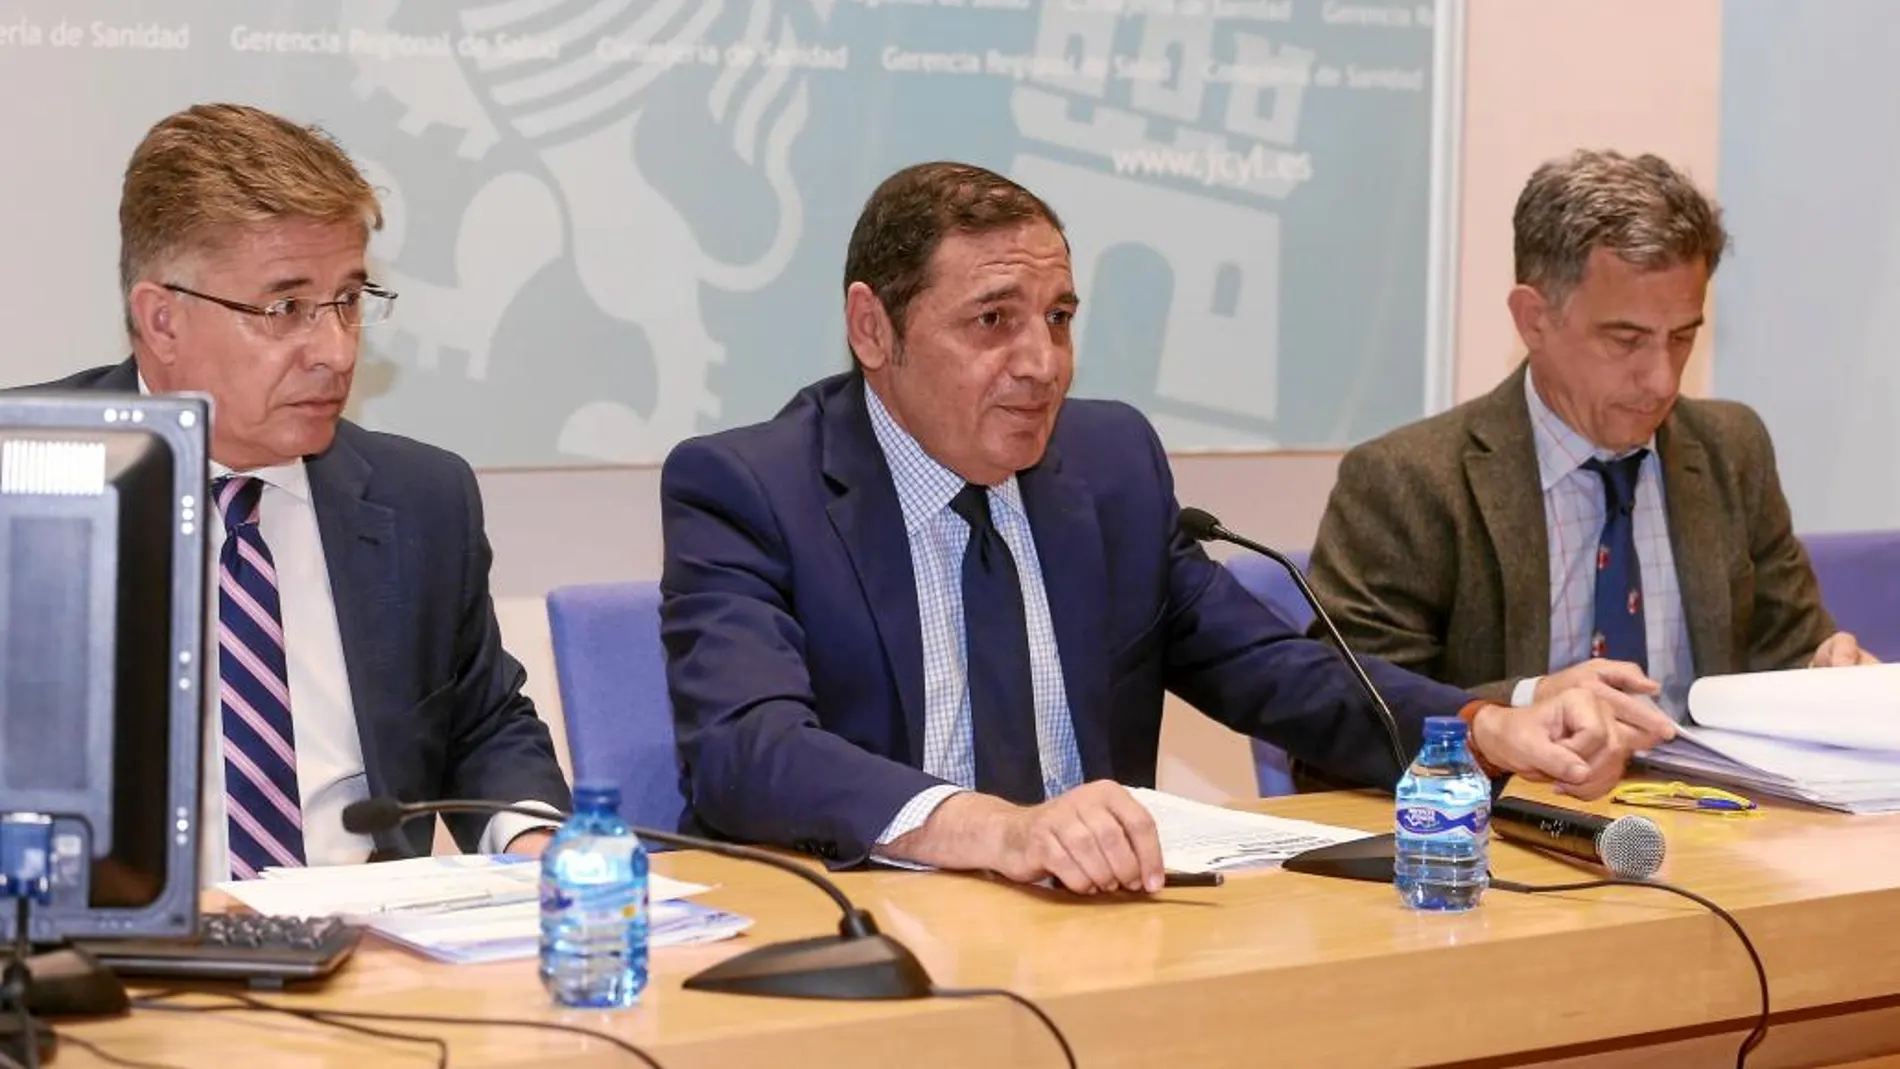 El consejero Antonio María Sáez Aguado, junto a responsables de la Consejería, presenta los resultados de Perycles